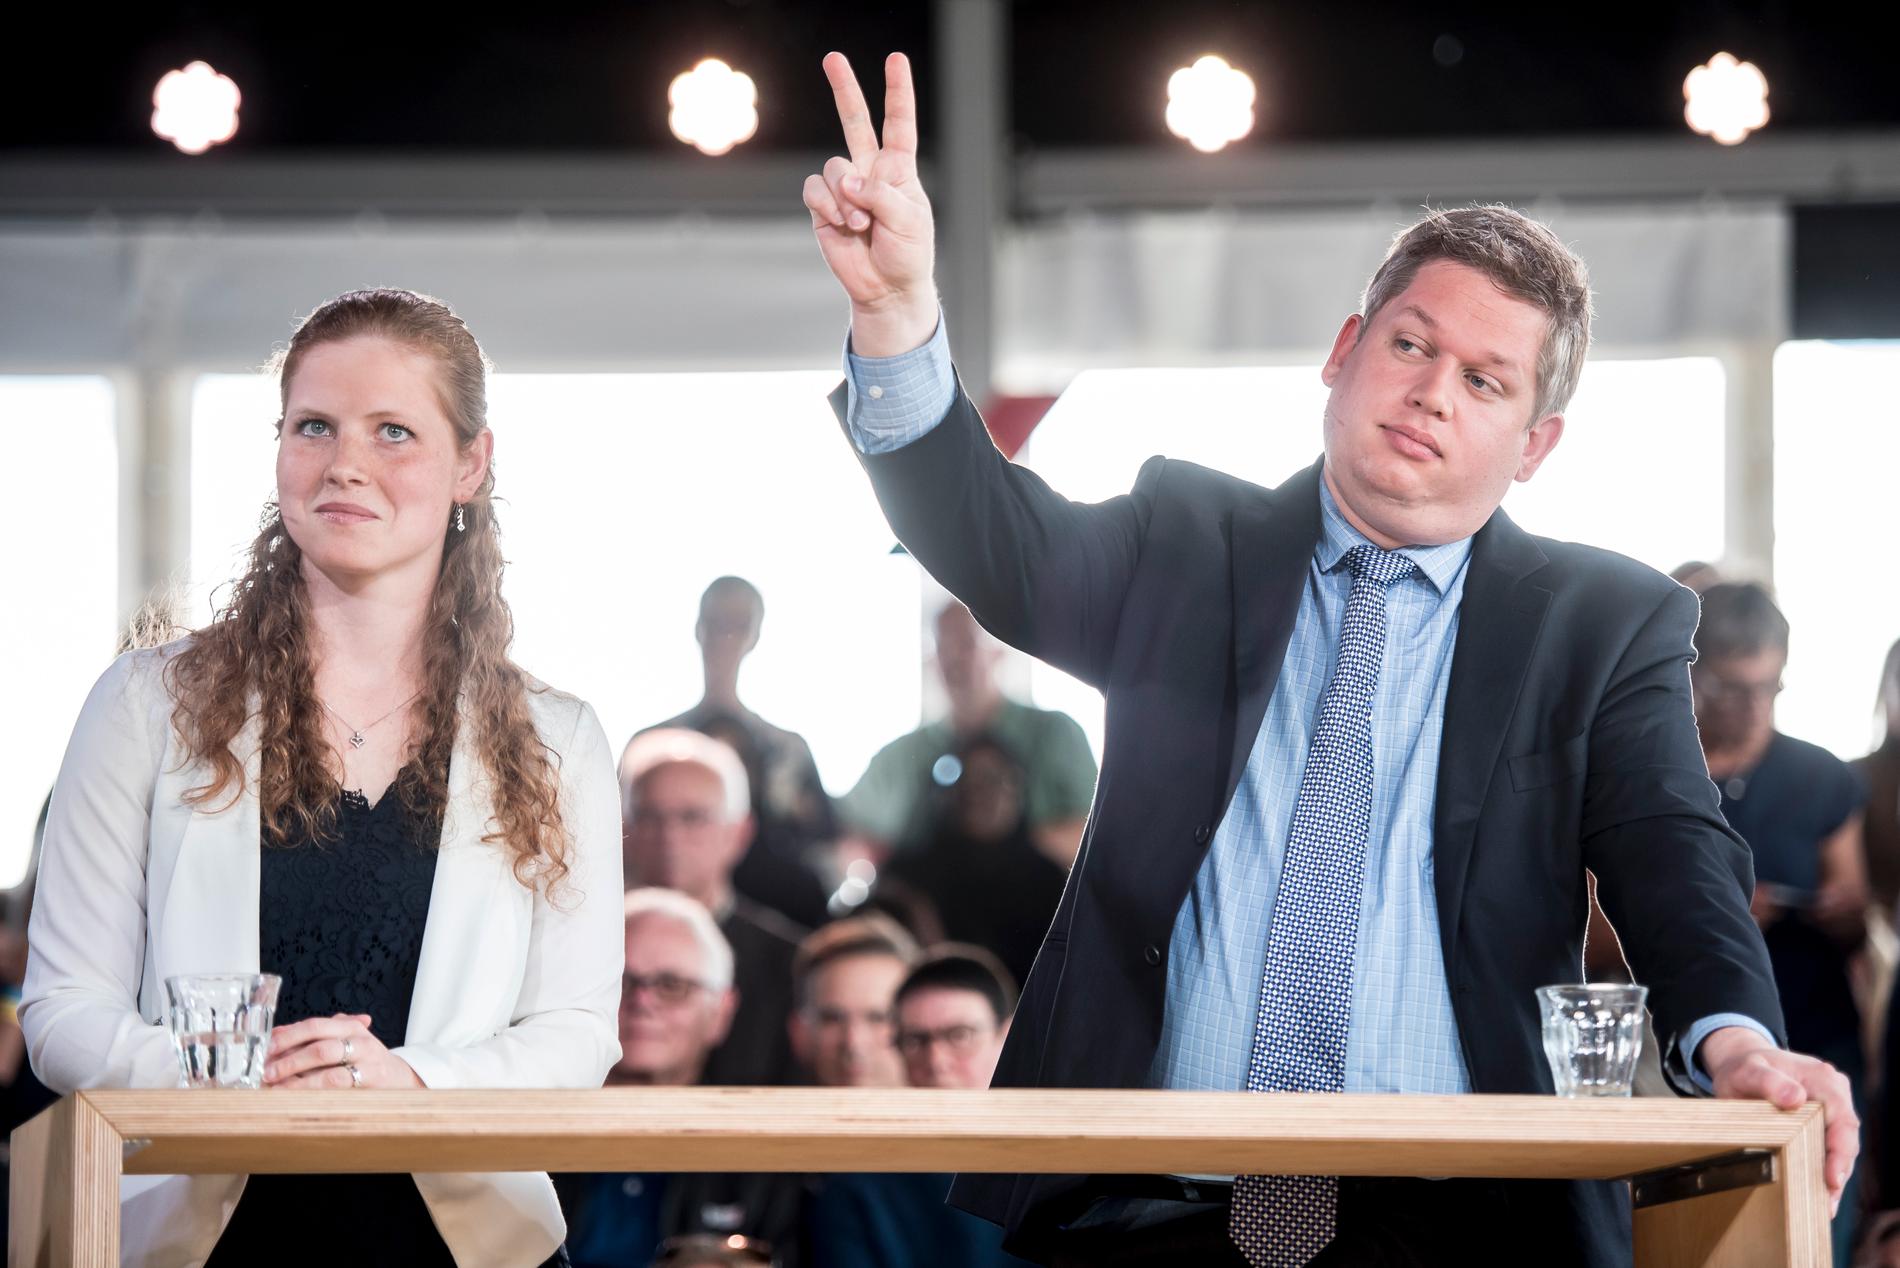 Rasmus Paludan, till höger, under en debatt i den danska kanalen TV2 den 10 maj.